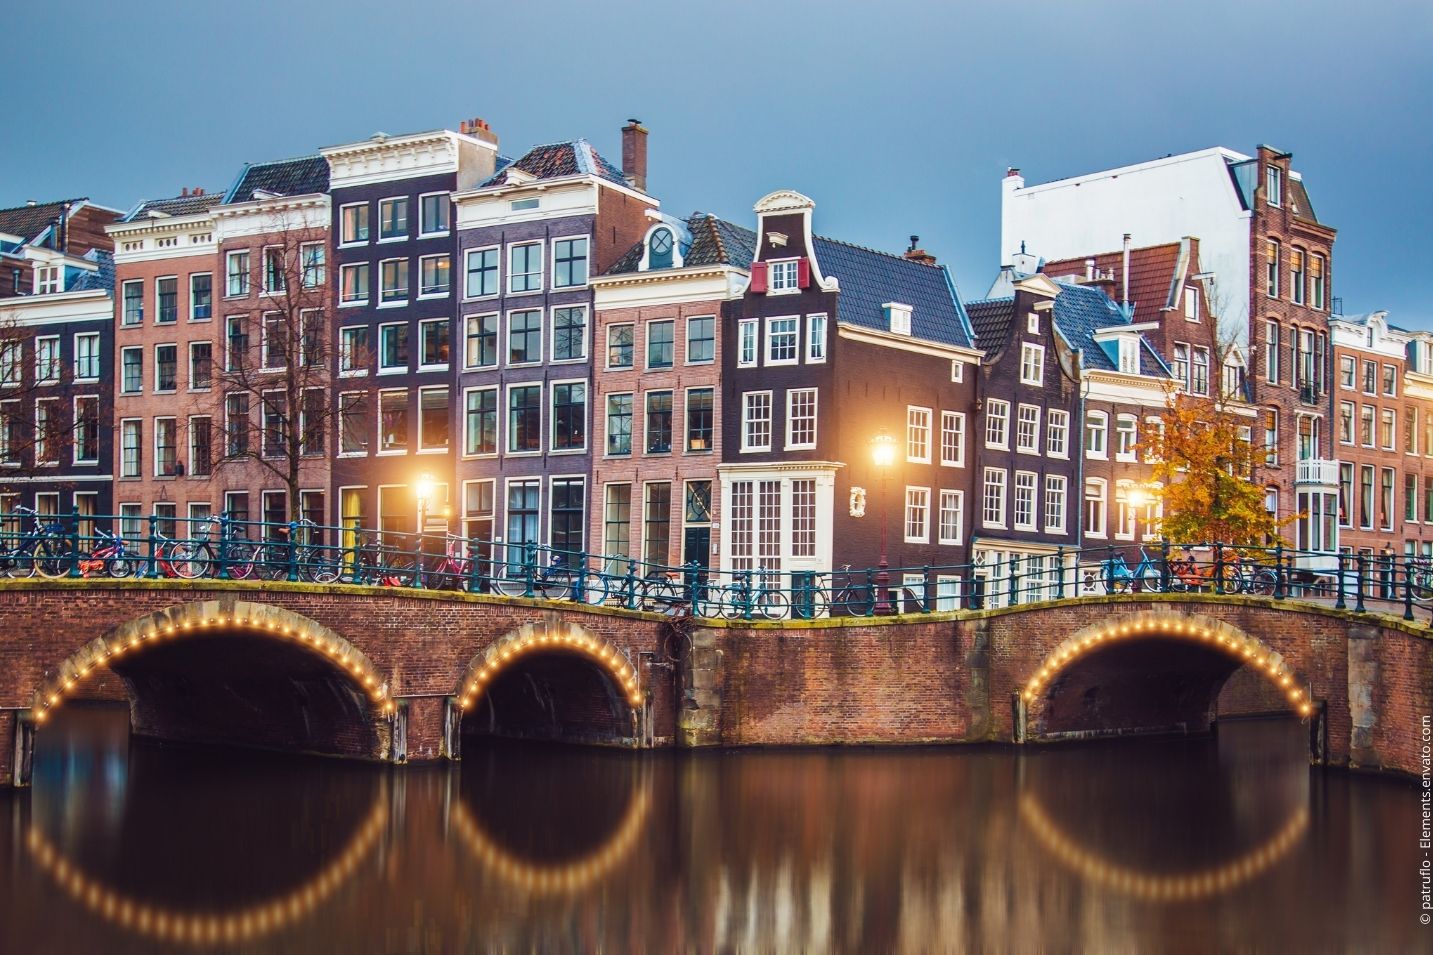 Architektonische Meisterwerke in den Niederlanden - die besondere Architektur in den Niederlanden erstreckt sich noch weit über Amsterdam hinaus.